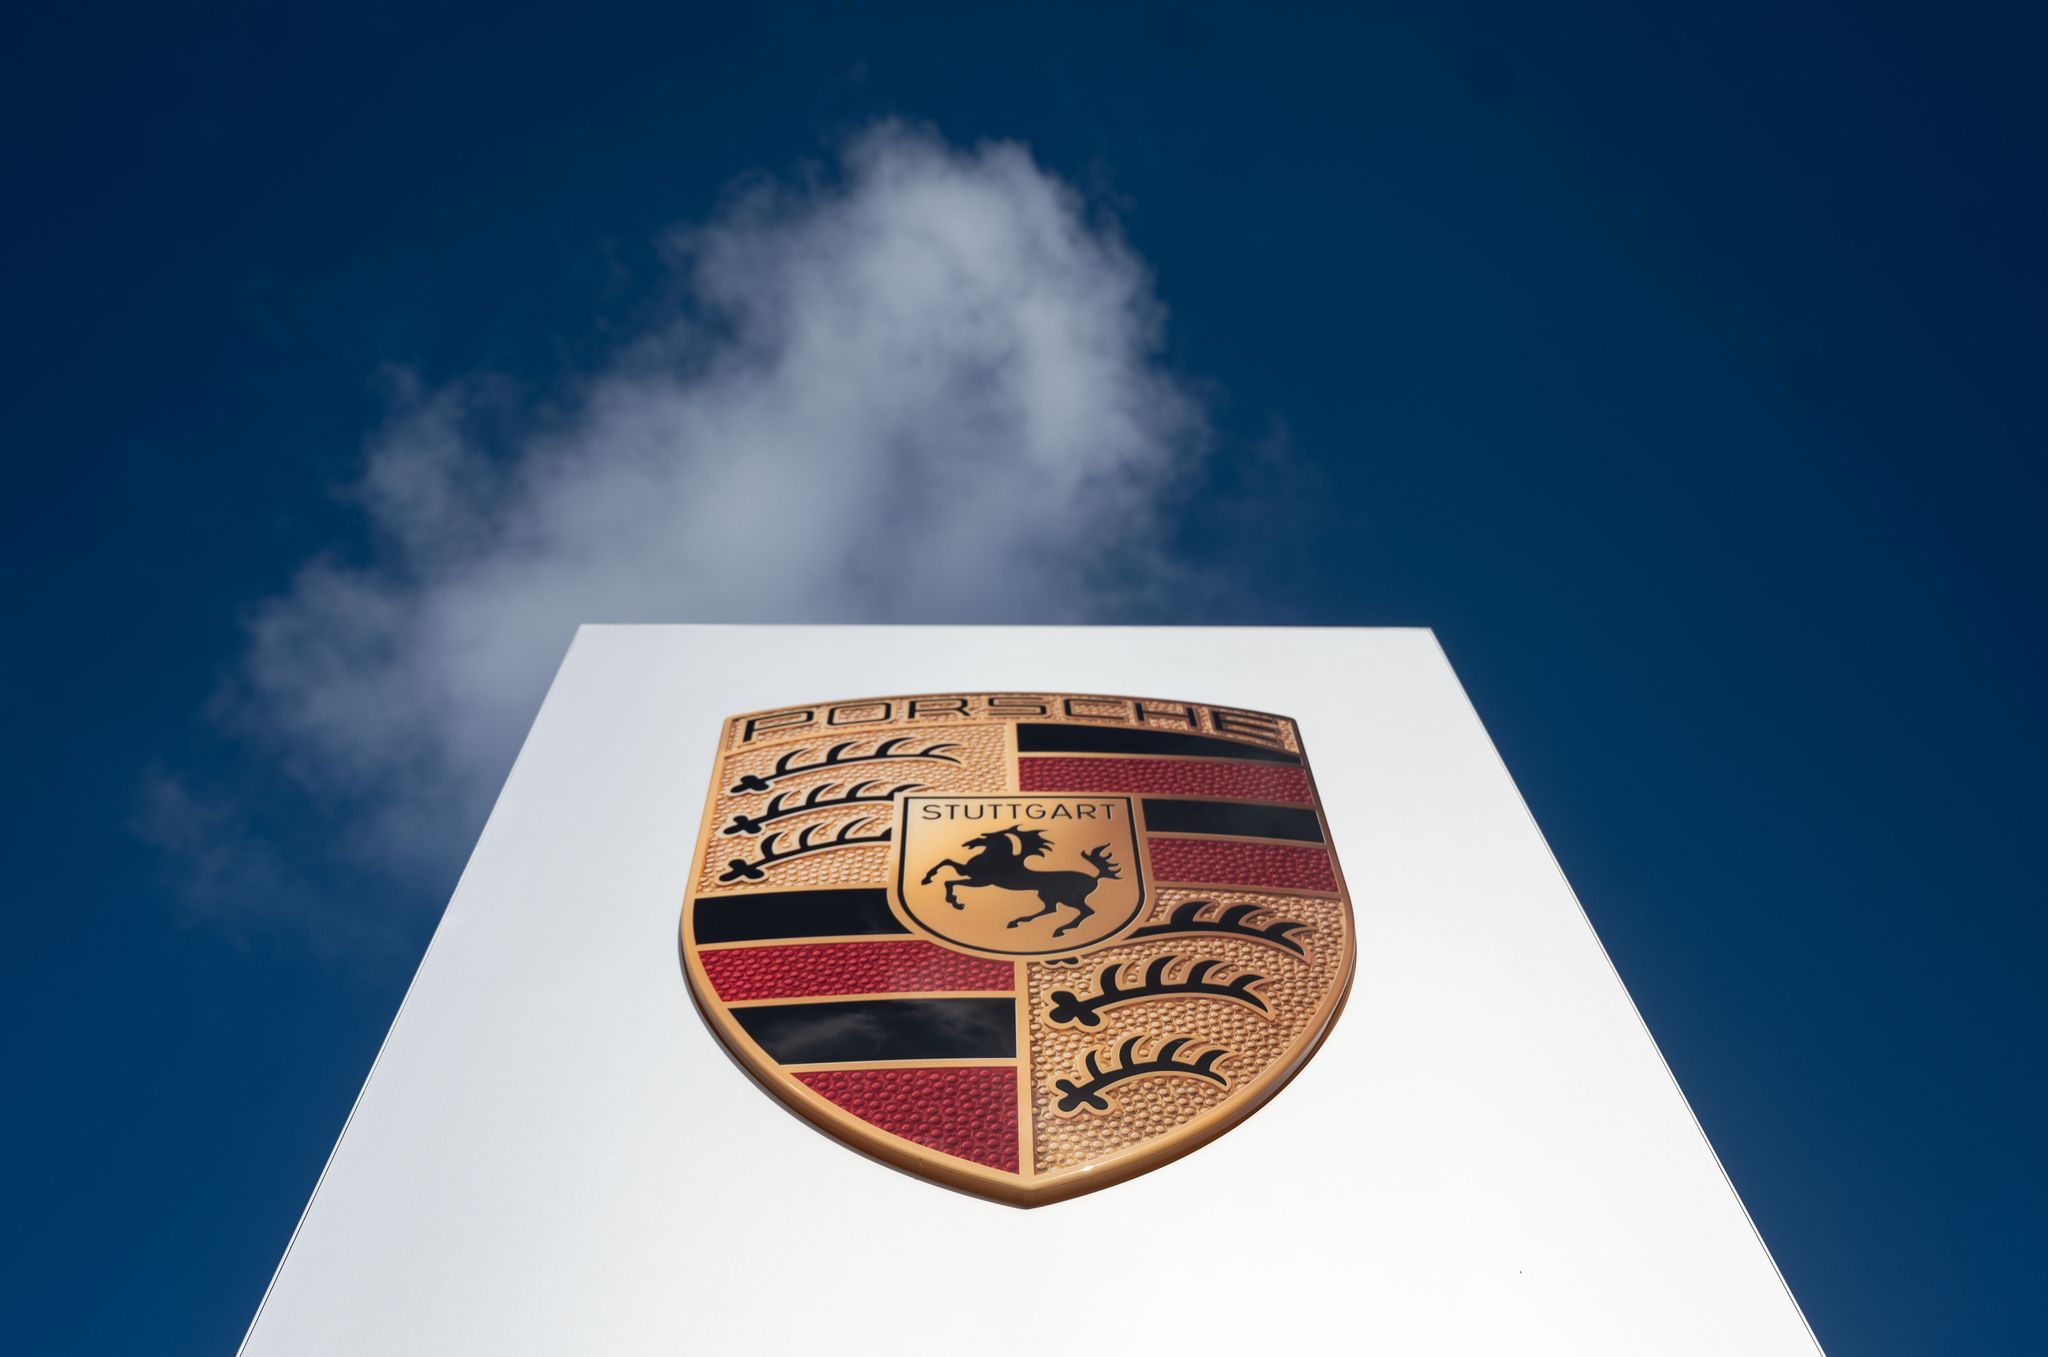 Ein Sprecher des Unternehmens sagte, ein befristetes Arbeitsverhältnis könne eine Chance sein, um bei Porsche zu einer Festanstellung zu kommen.